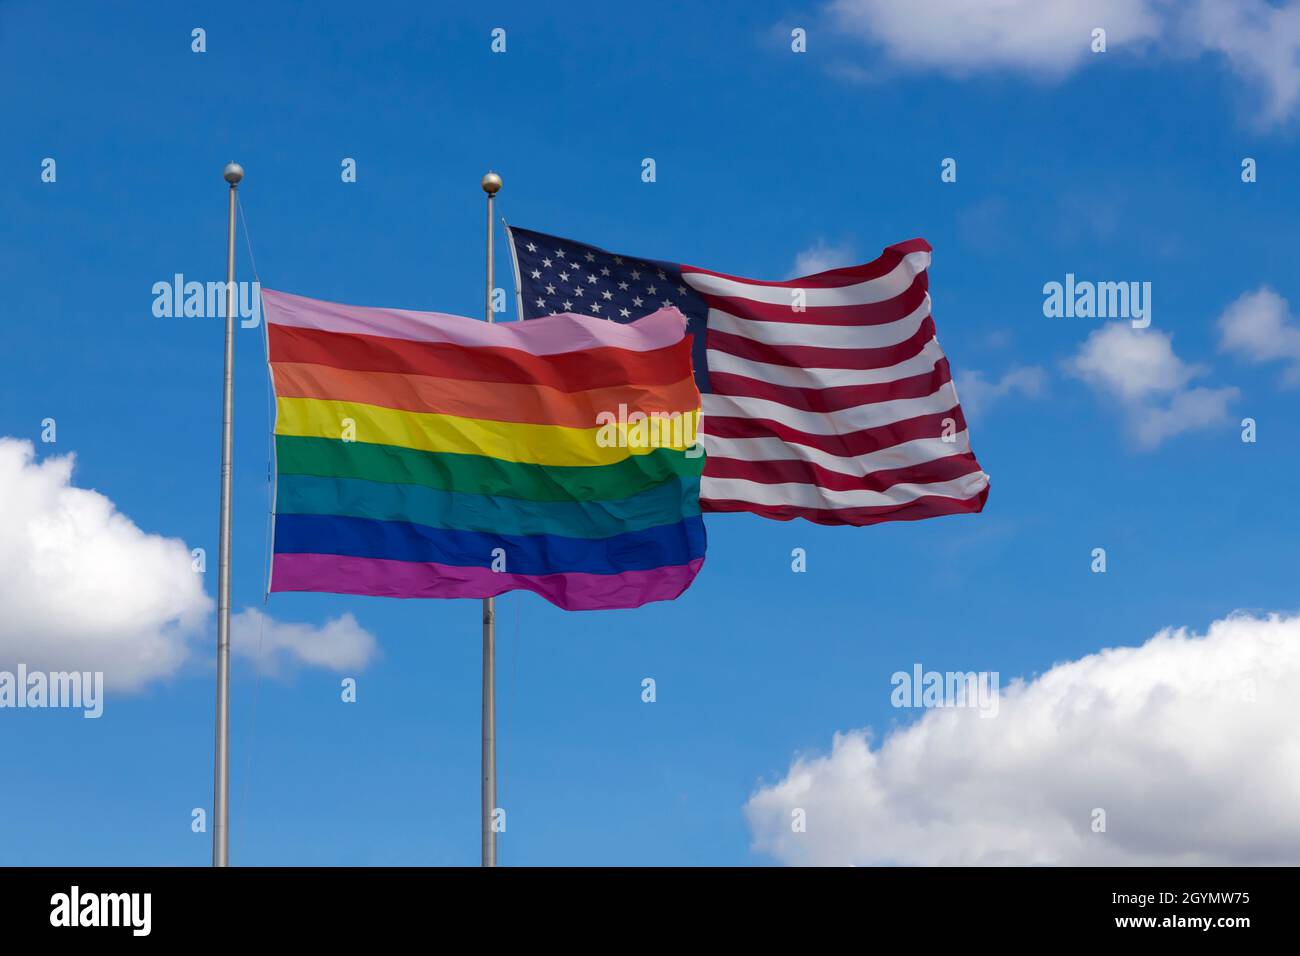 Bandera arco iris/bandera de orgullo gay (LGBT) volando junto a la bandera americana en Cherry Grove, Fire Island, Nueva York, Estados Unidos de América. Foto de stock